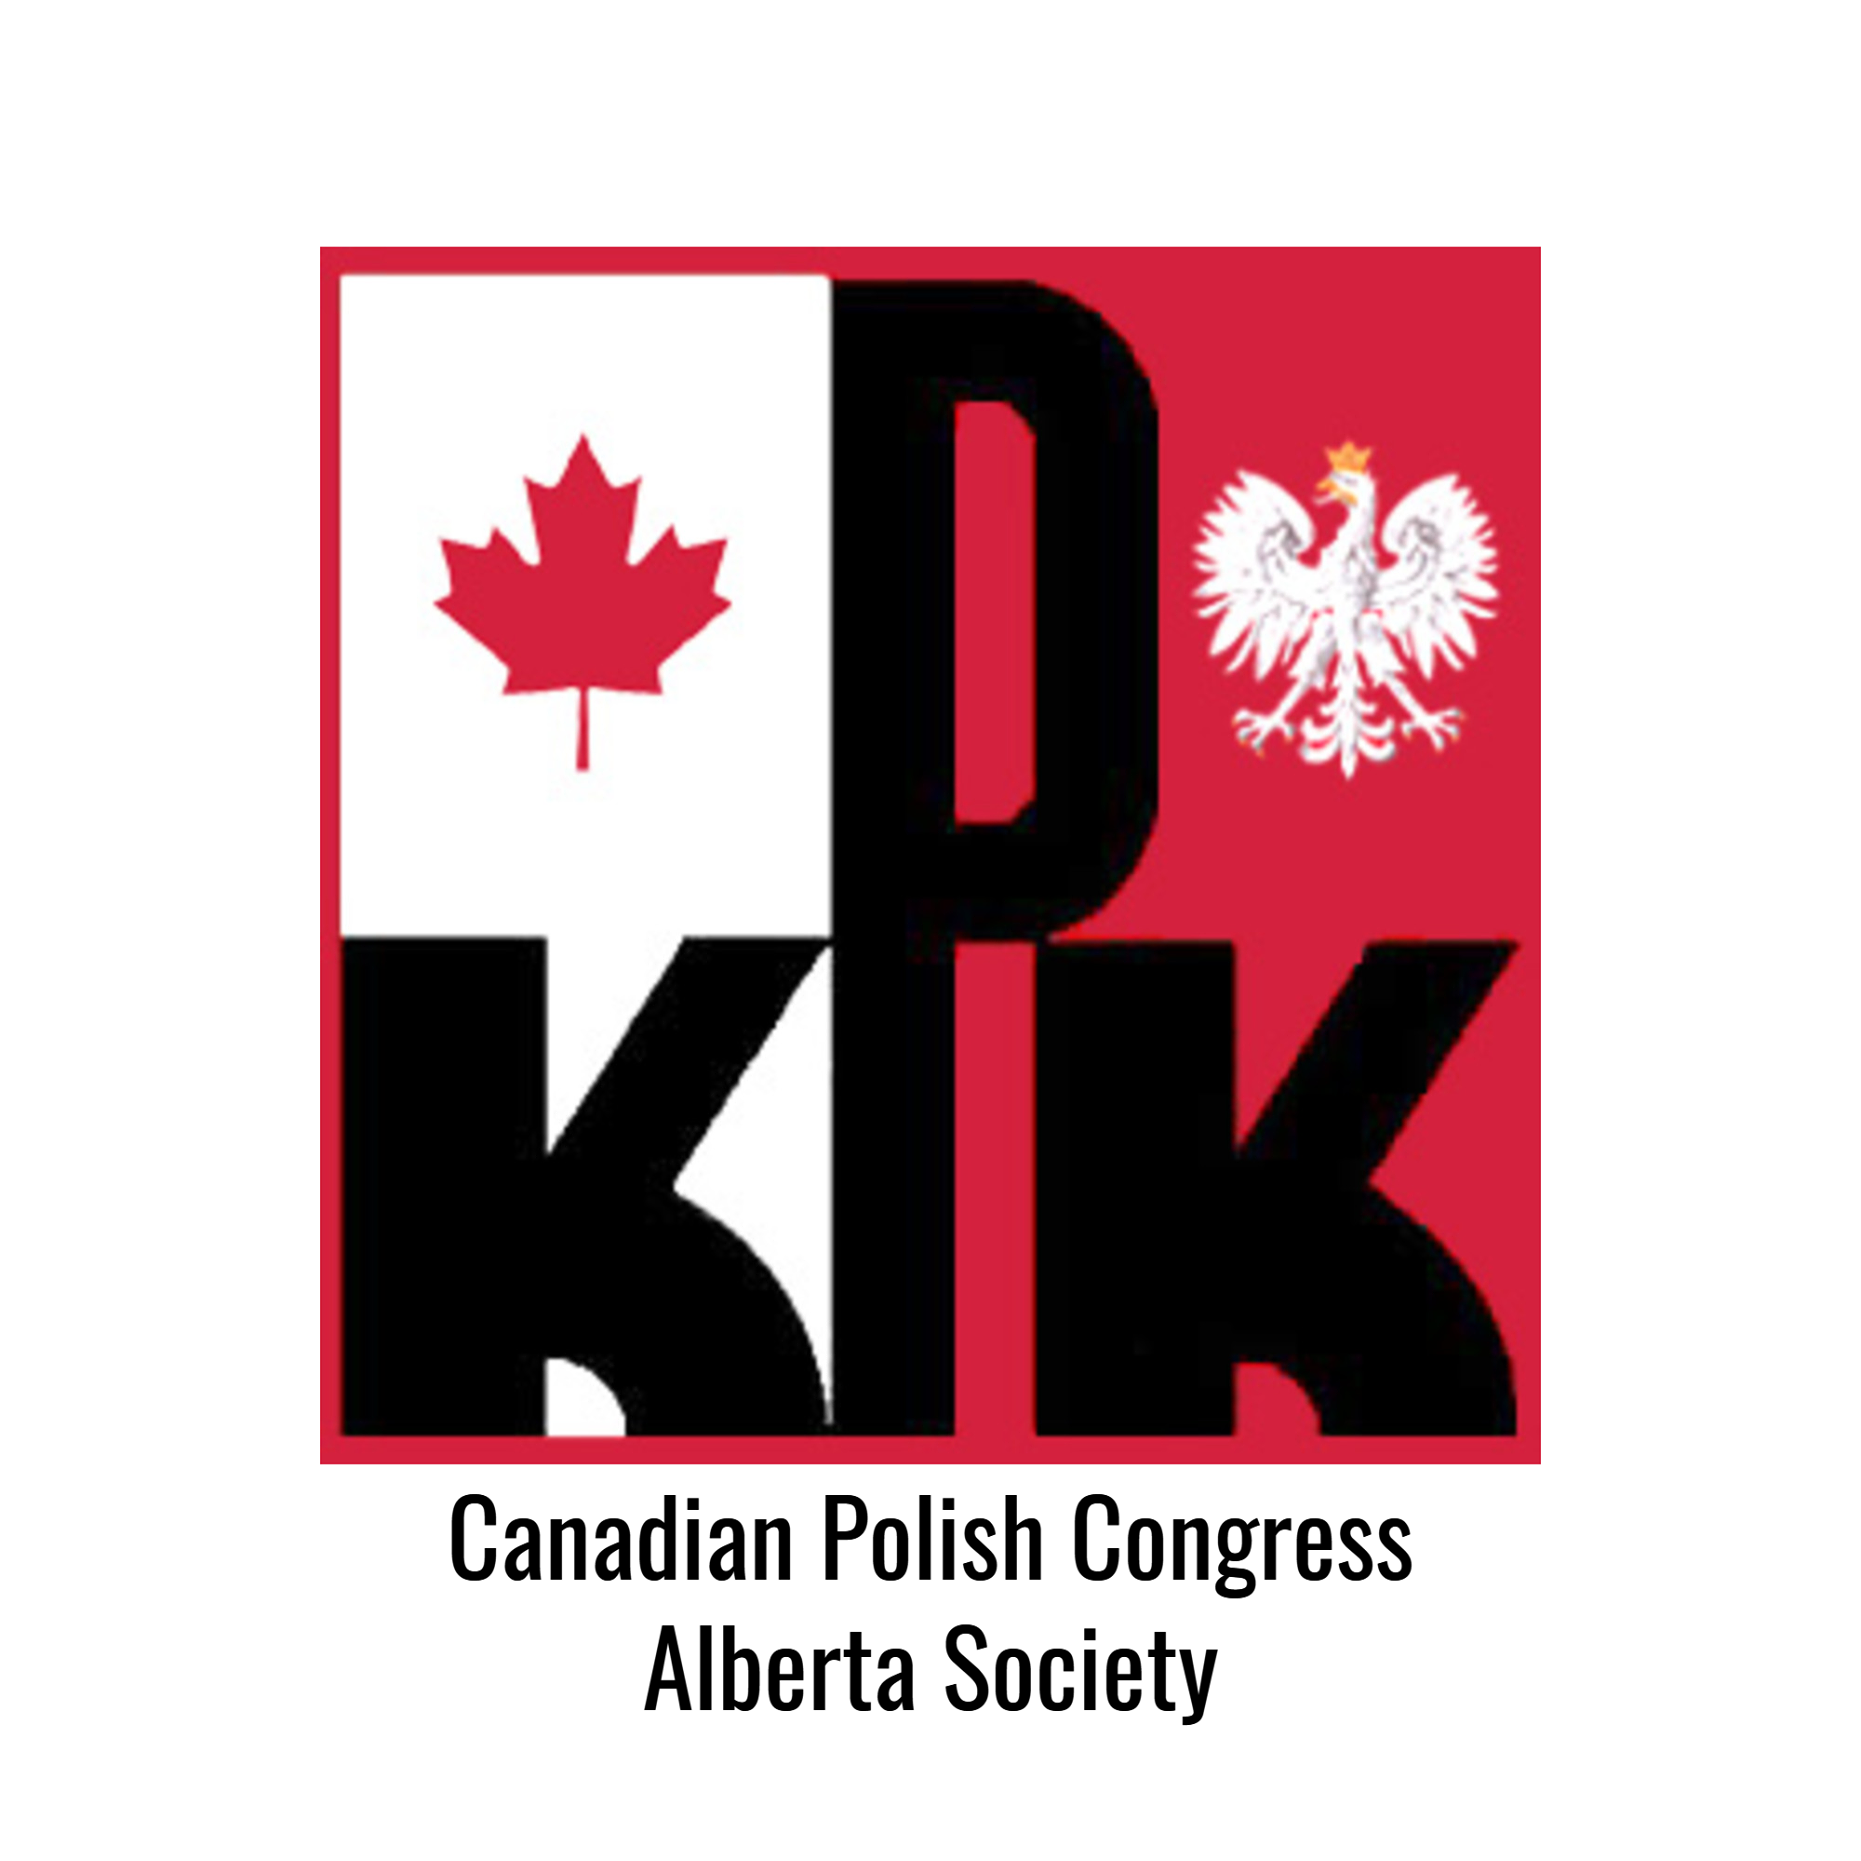 Polish Organizations in Calgary Alberta - Canadian Polish Congress Alberta Society